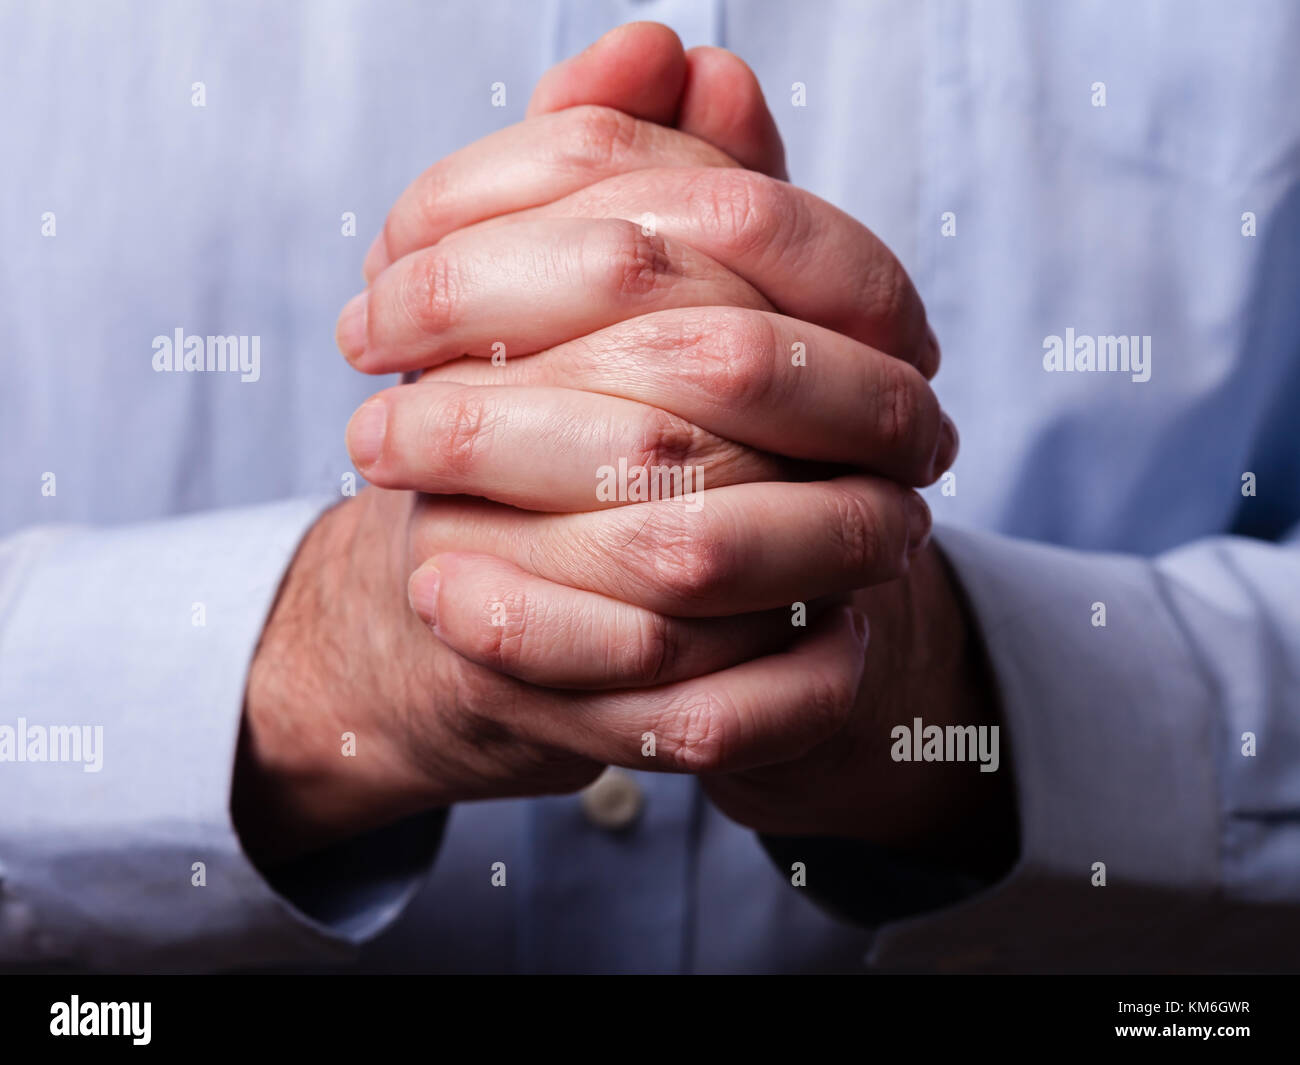 Close up ou libre de mains d'homme mûr fidèles priant mains jointes. les doigts entrecroisés, dans le culte à Dieu. concept pour la religion, la foi, la prière d'un Banque D'Images